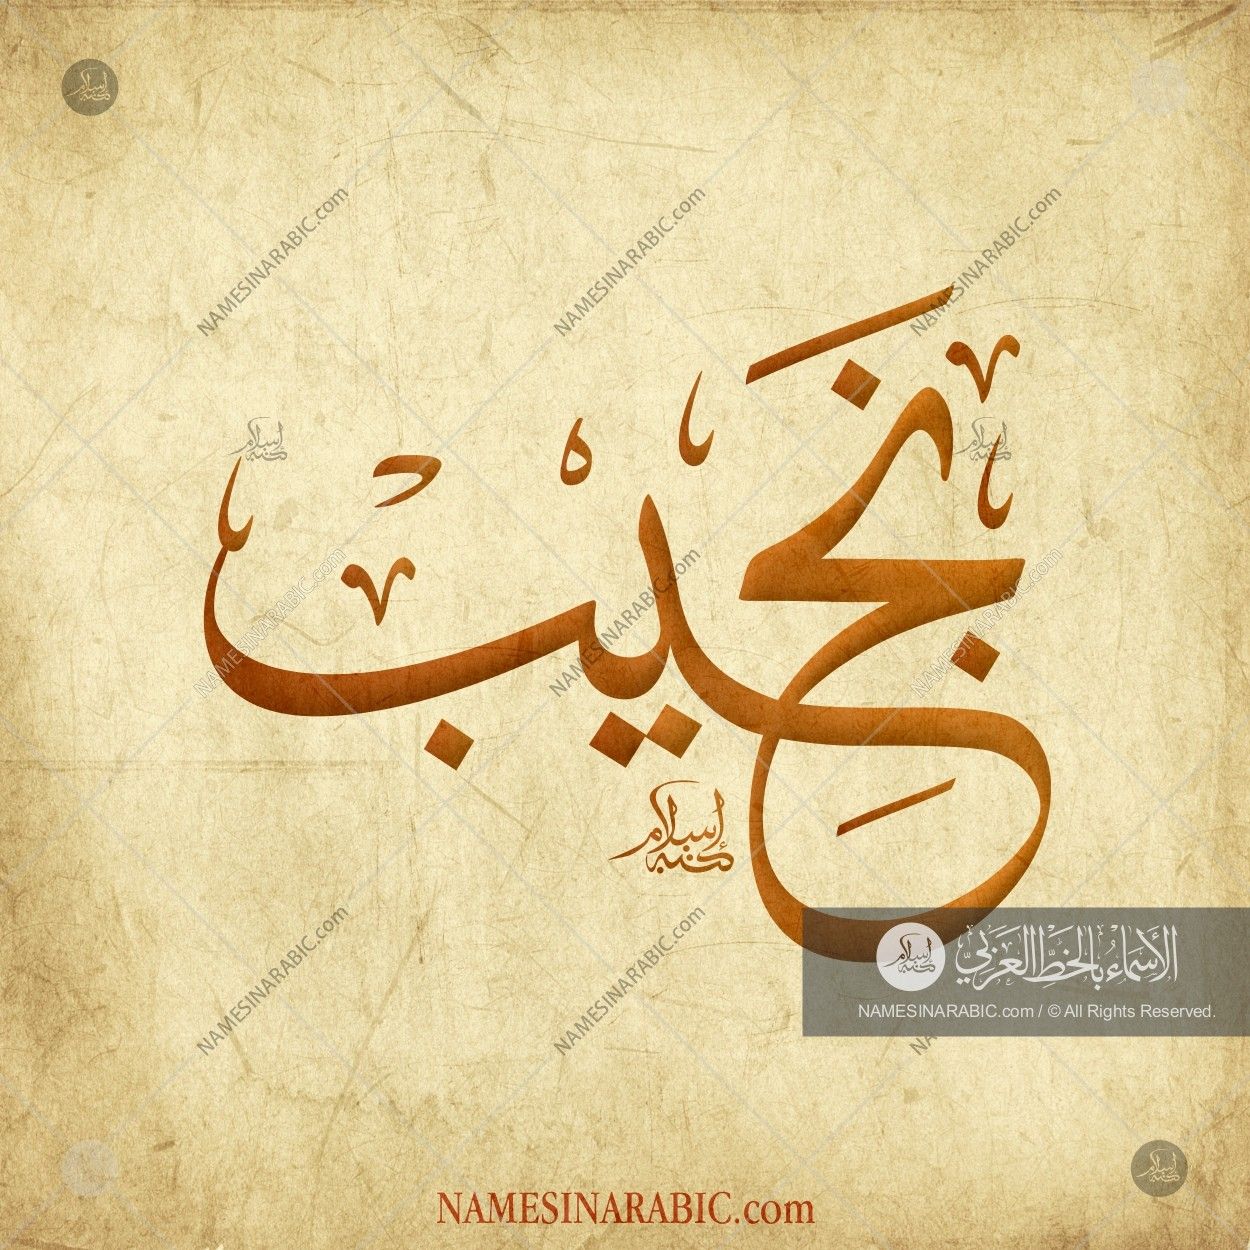 نجيب / Names In Arabic Calligraphy - Yahya In Arabic Calligraphy , HD Wallpaper & Backgrounds